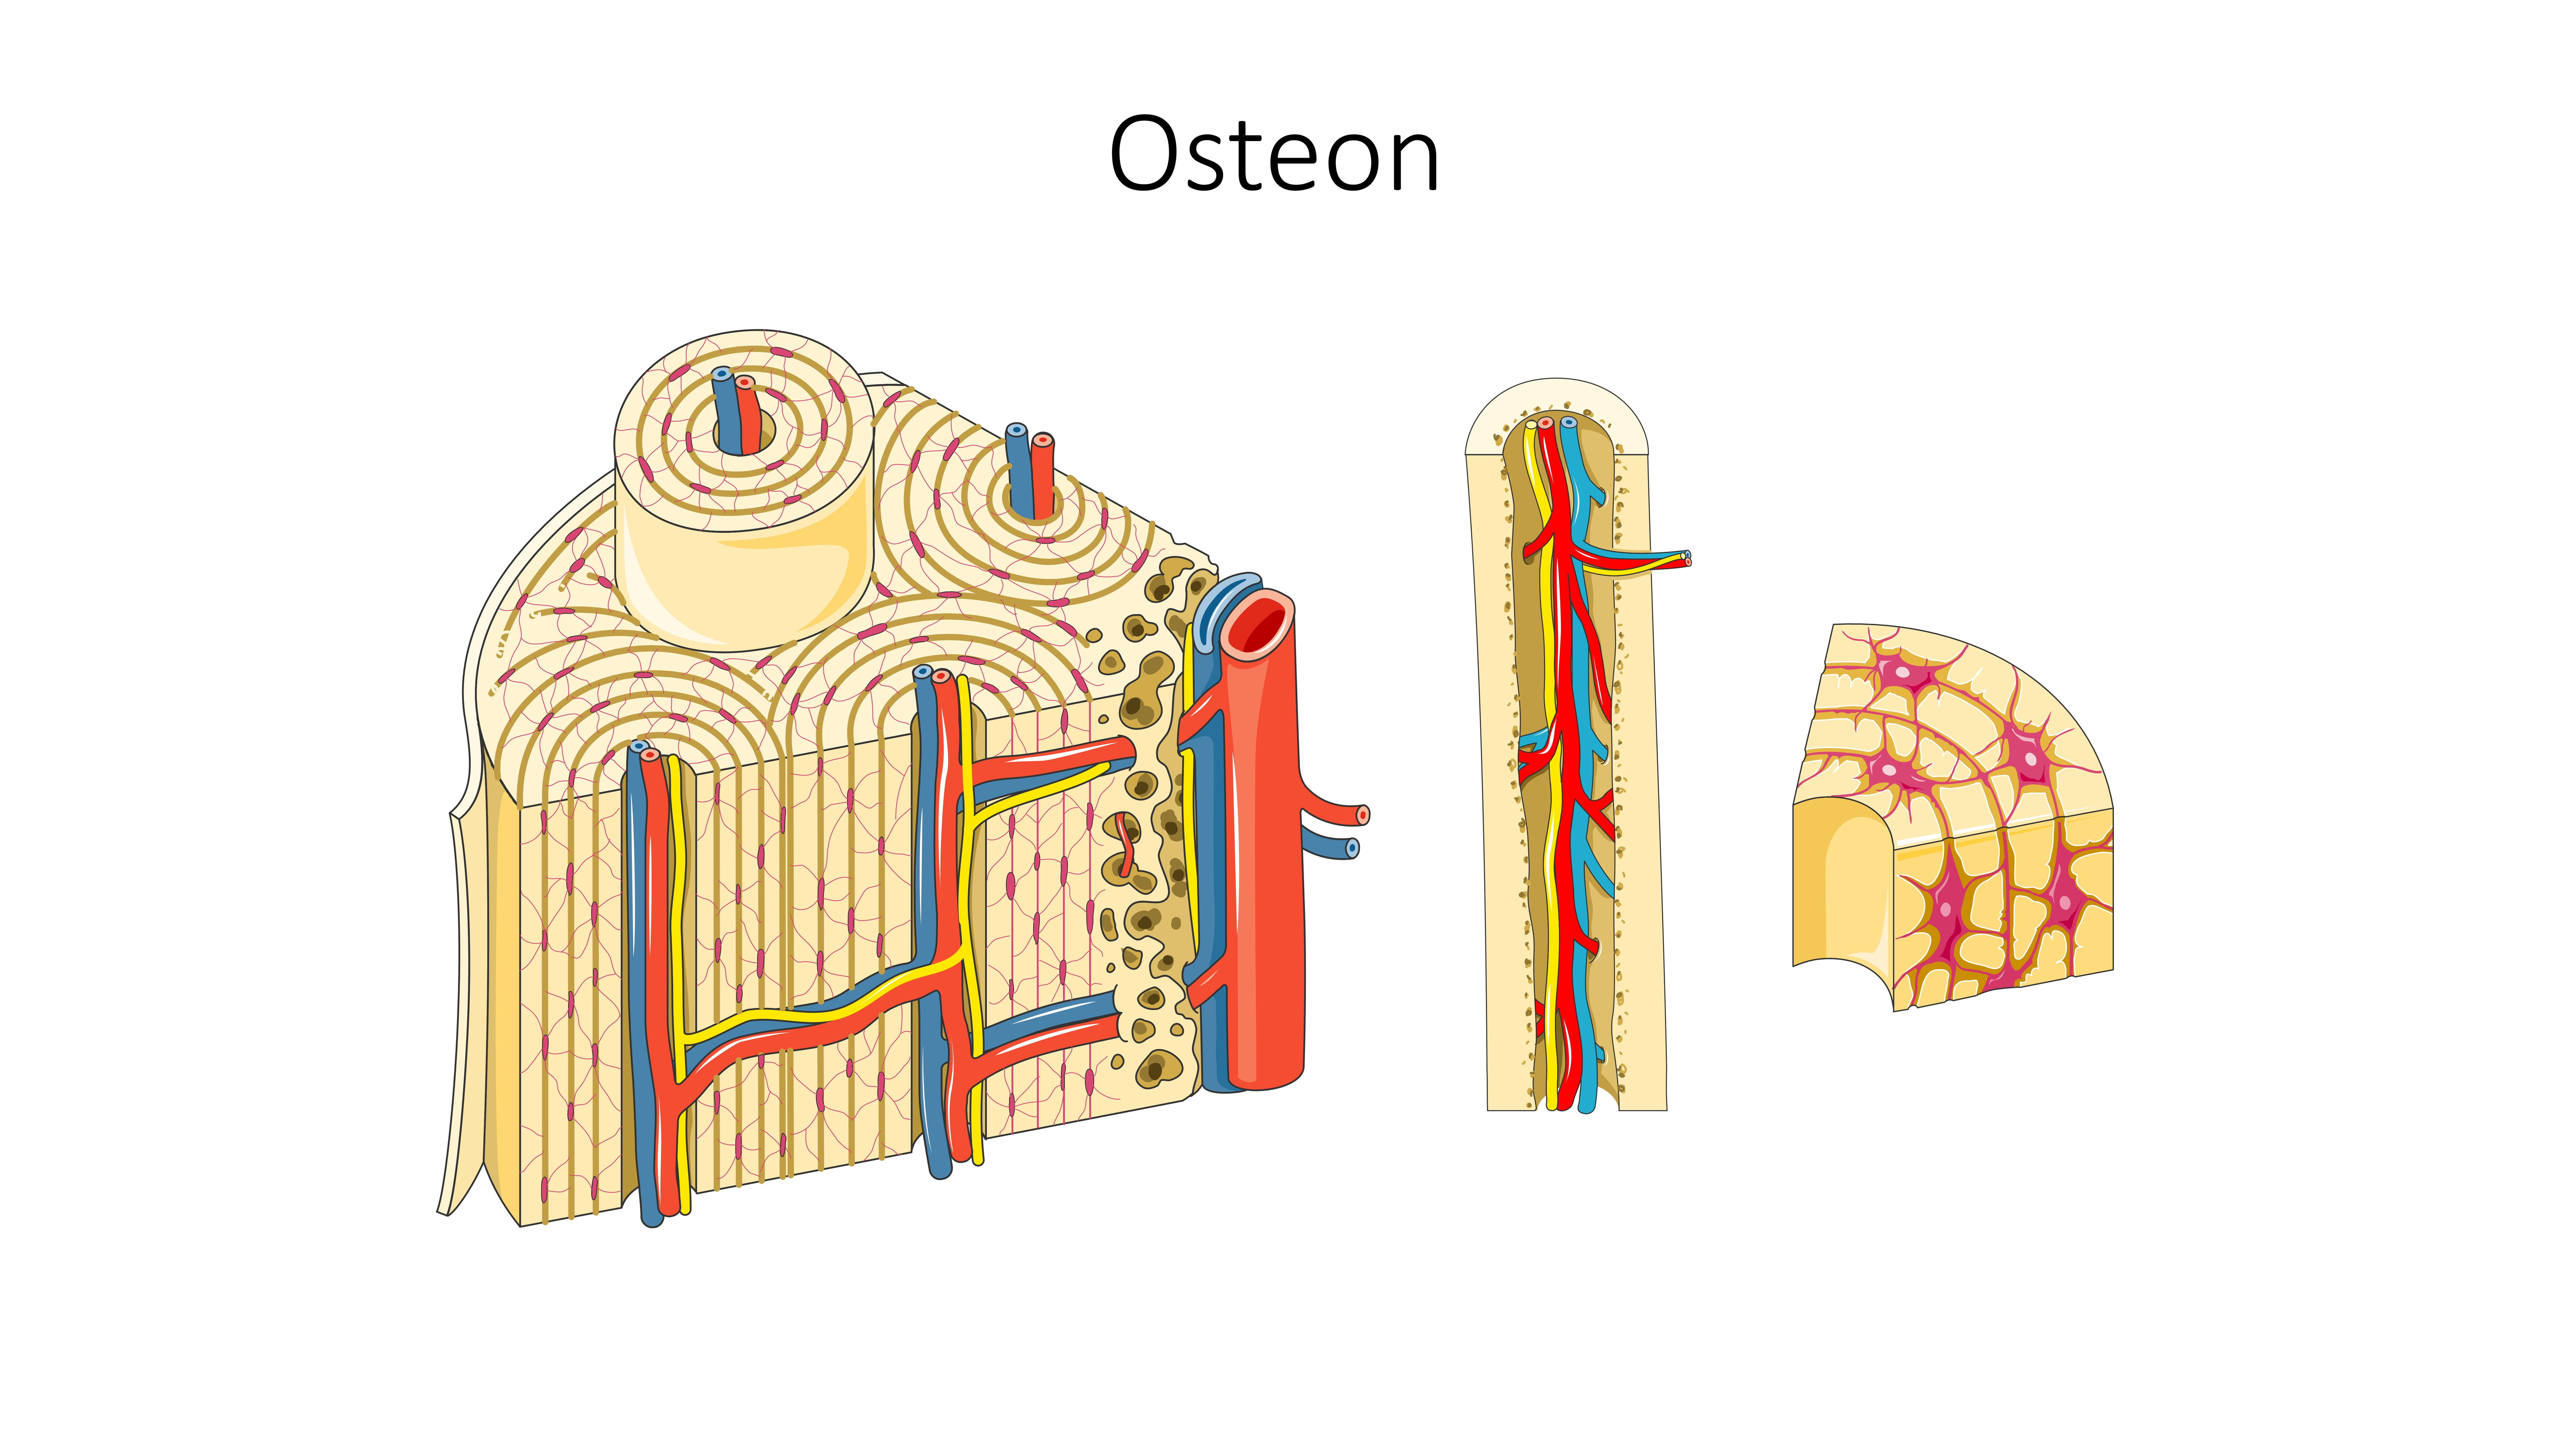 Schema der Osteon-Struktur